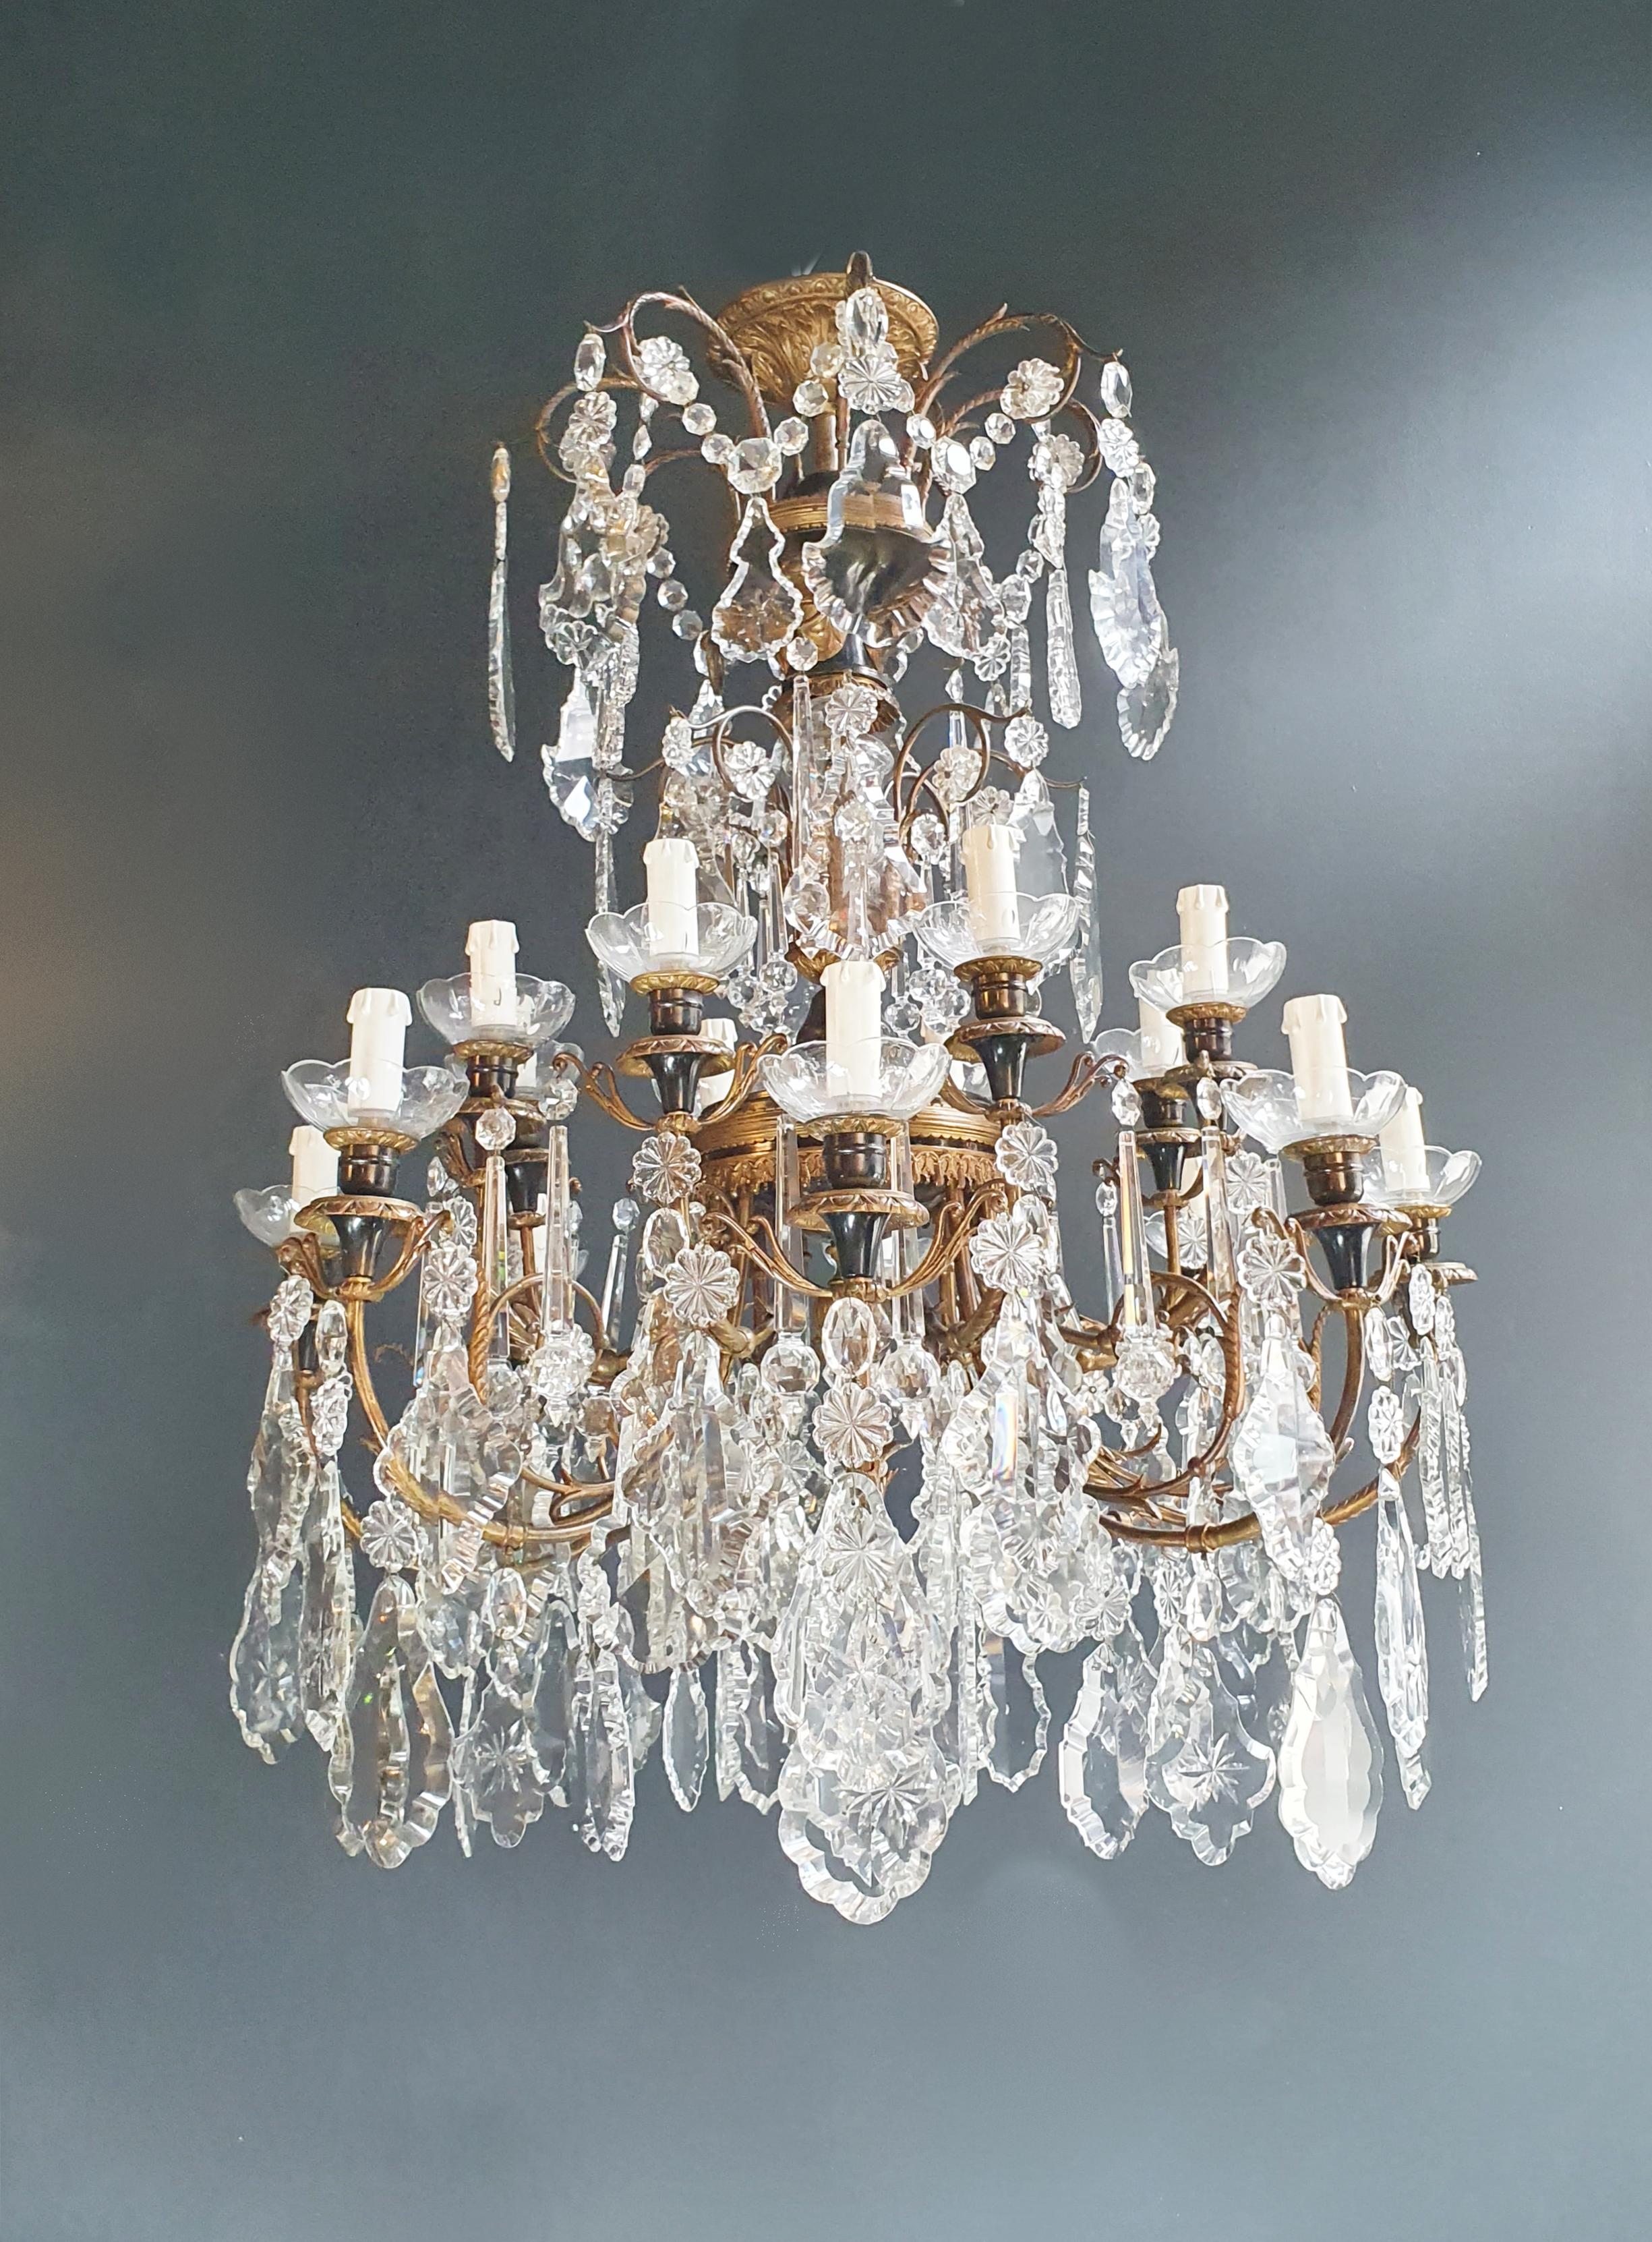 Brass Crystal Chandelier Antique Ceiling Lamp Lustre Art Nouveau Lamp 3